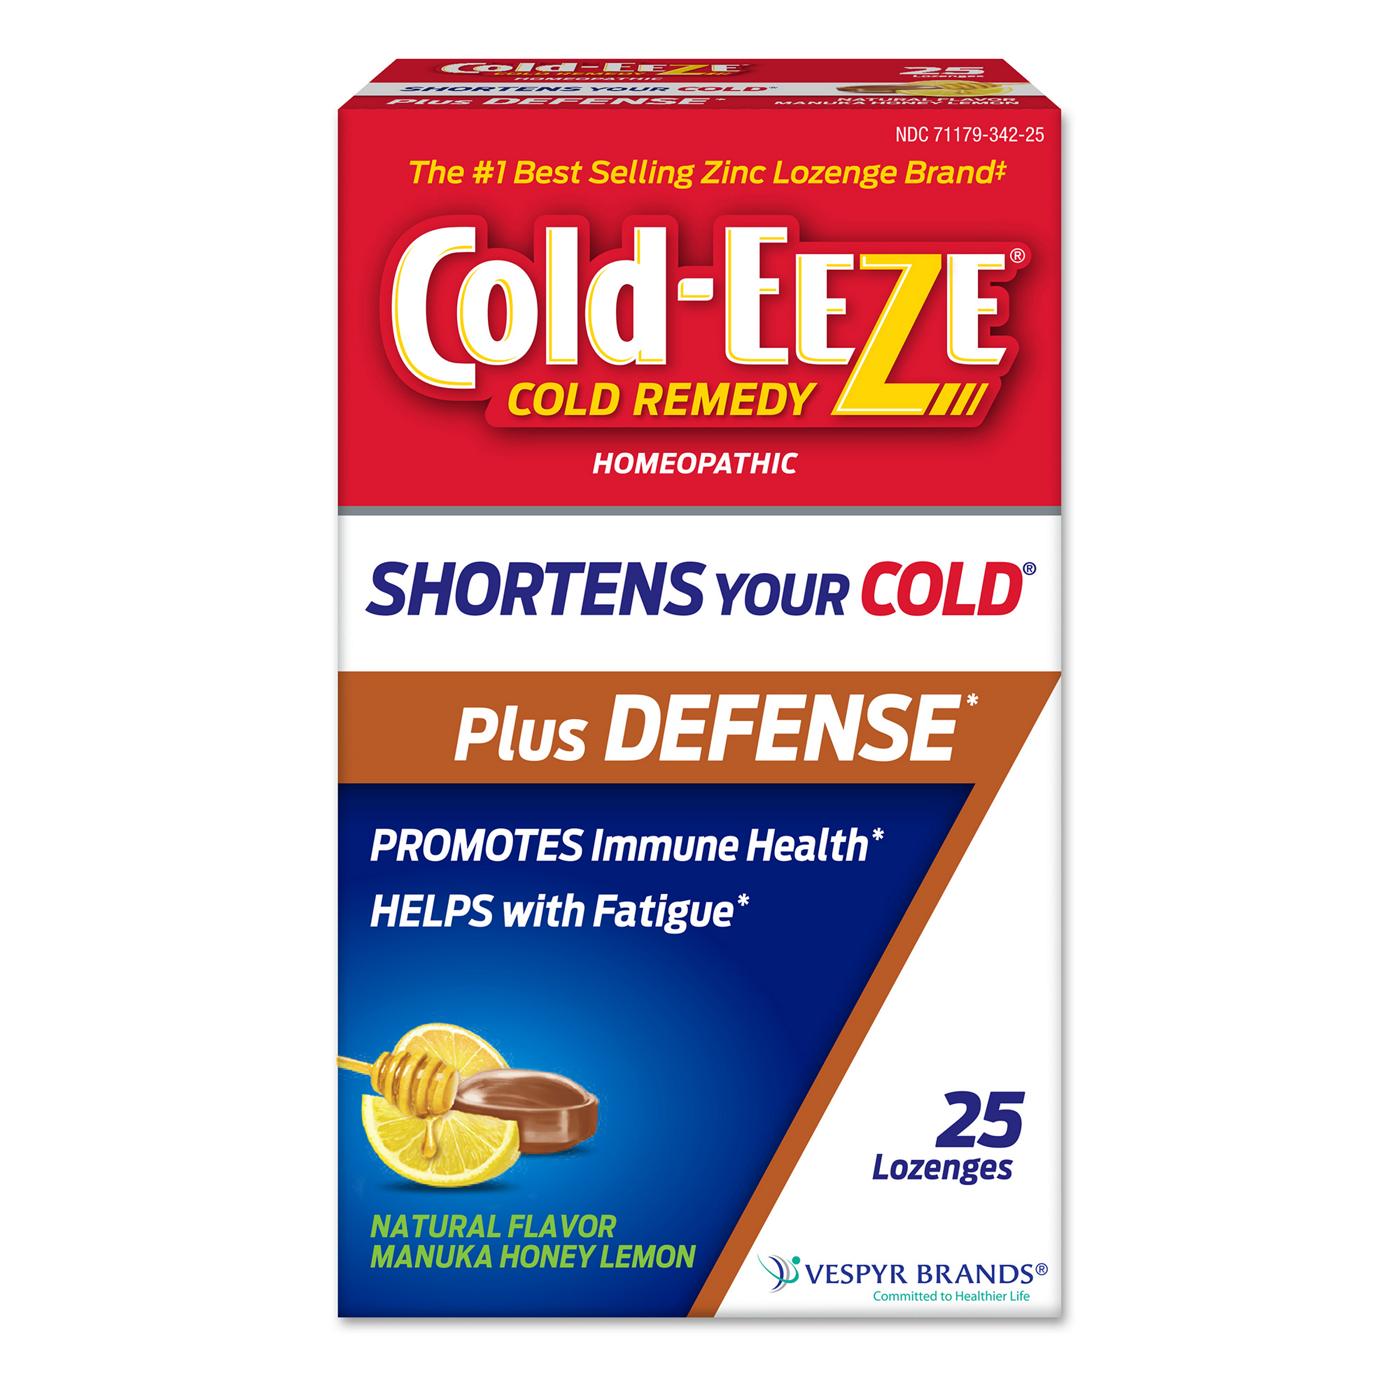 Cold-EEZE Cold Remedy Zinc Lozenges  - Manuka Honey Lemon; image 1 of 7